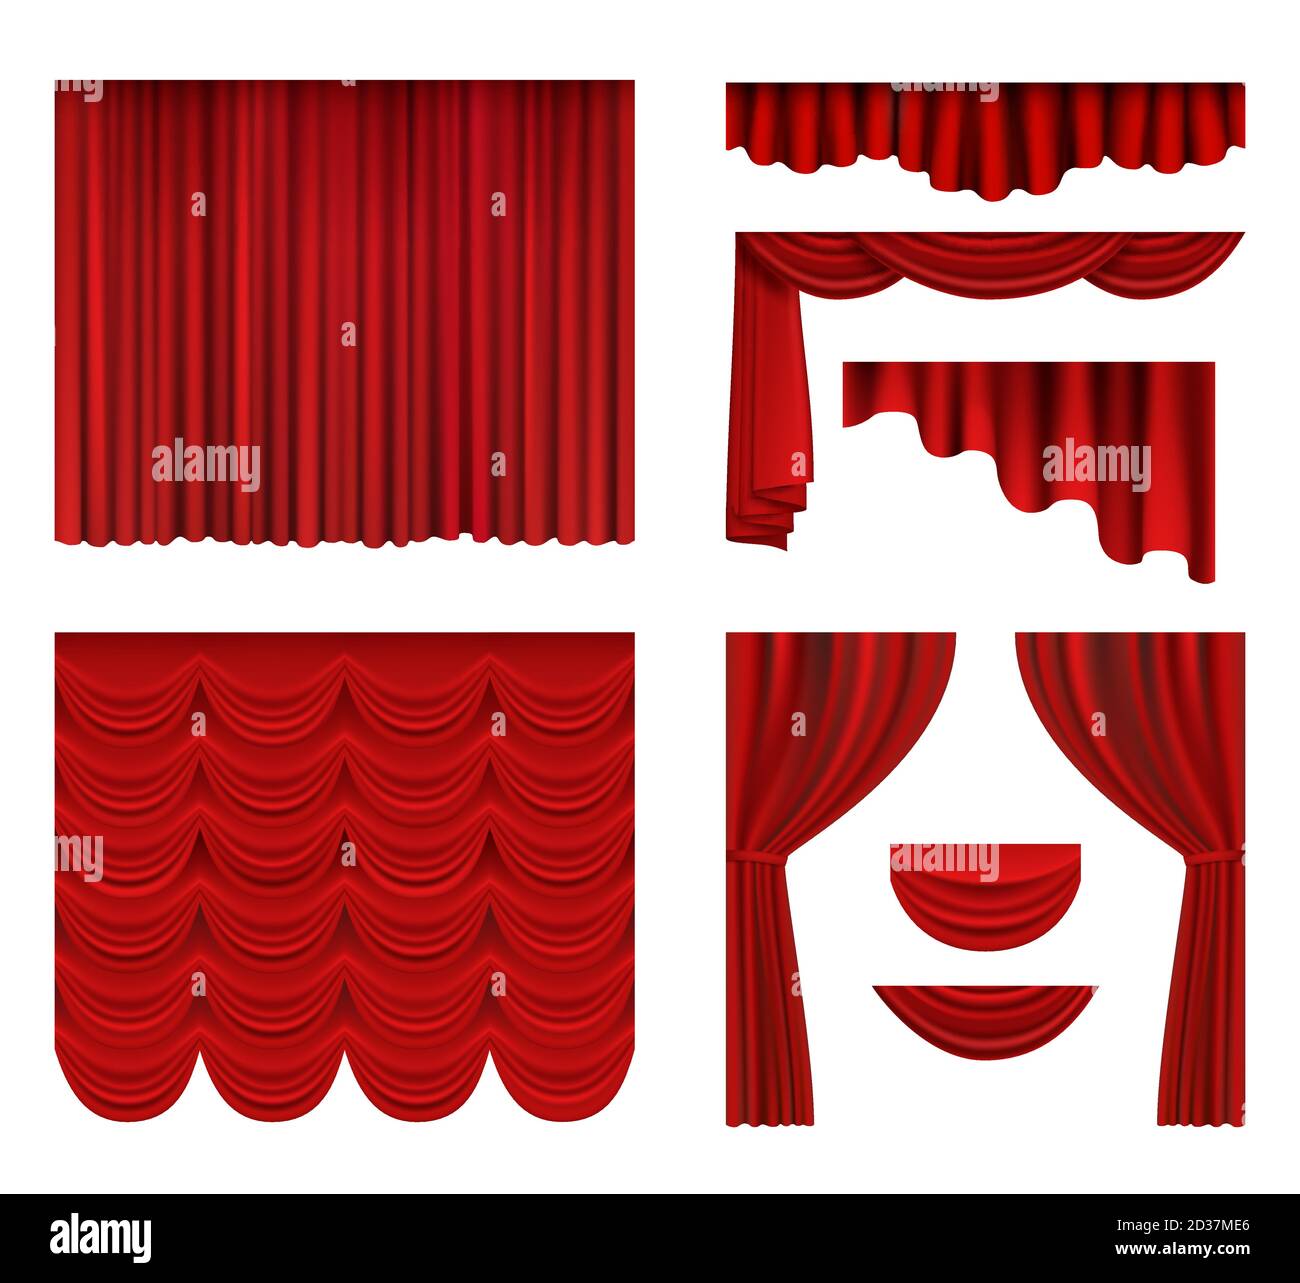 Rideaux rouges. Décoration en soie de tissu de théâtre pour cinéma ou opéra rideaux de luxe vecteur réaliste Illustration de Vecteur